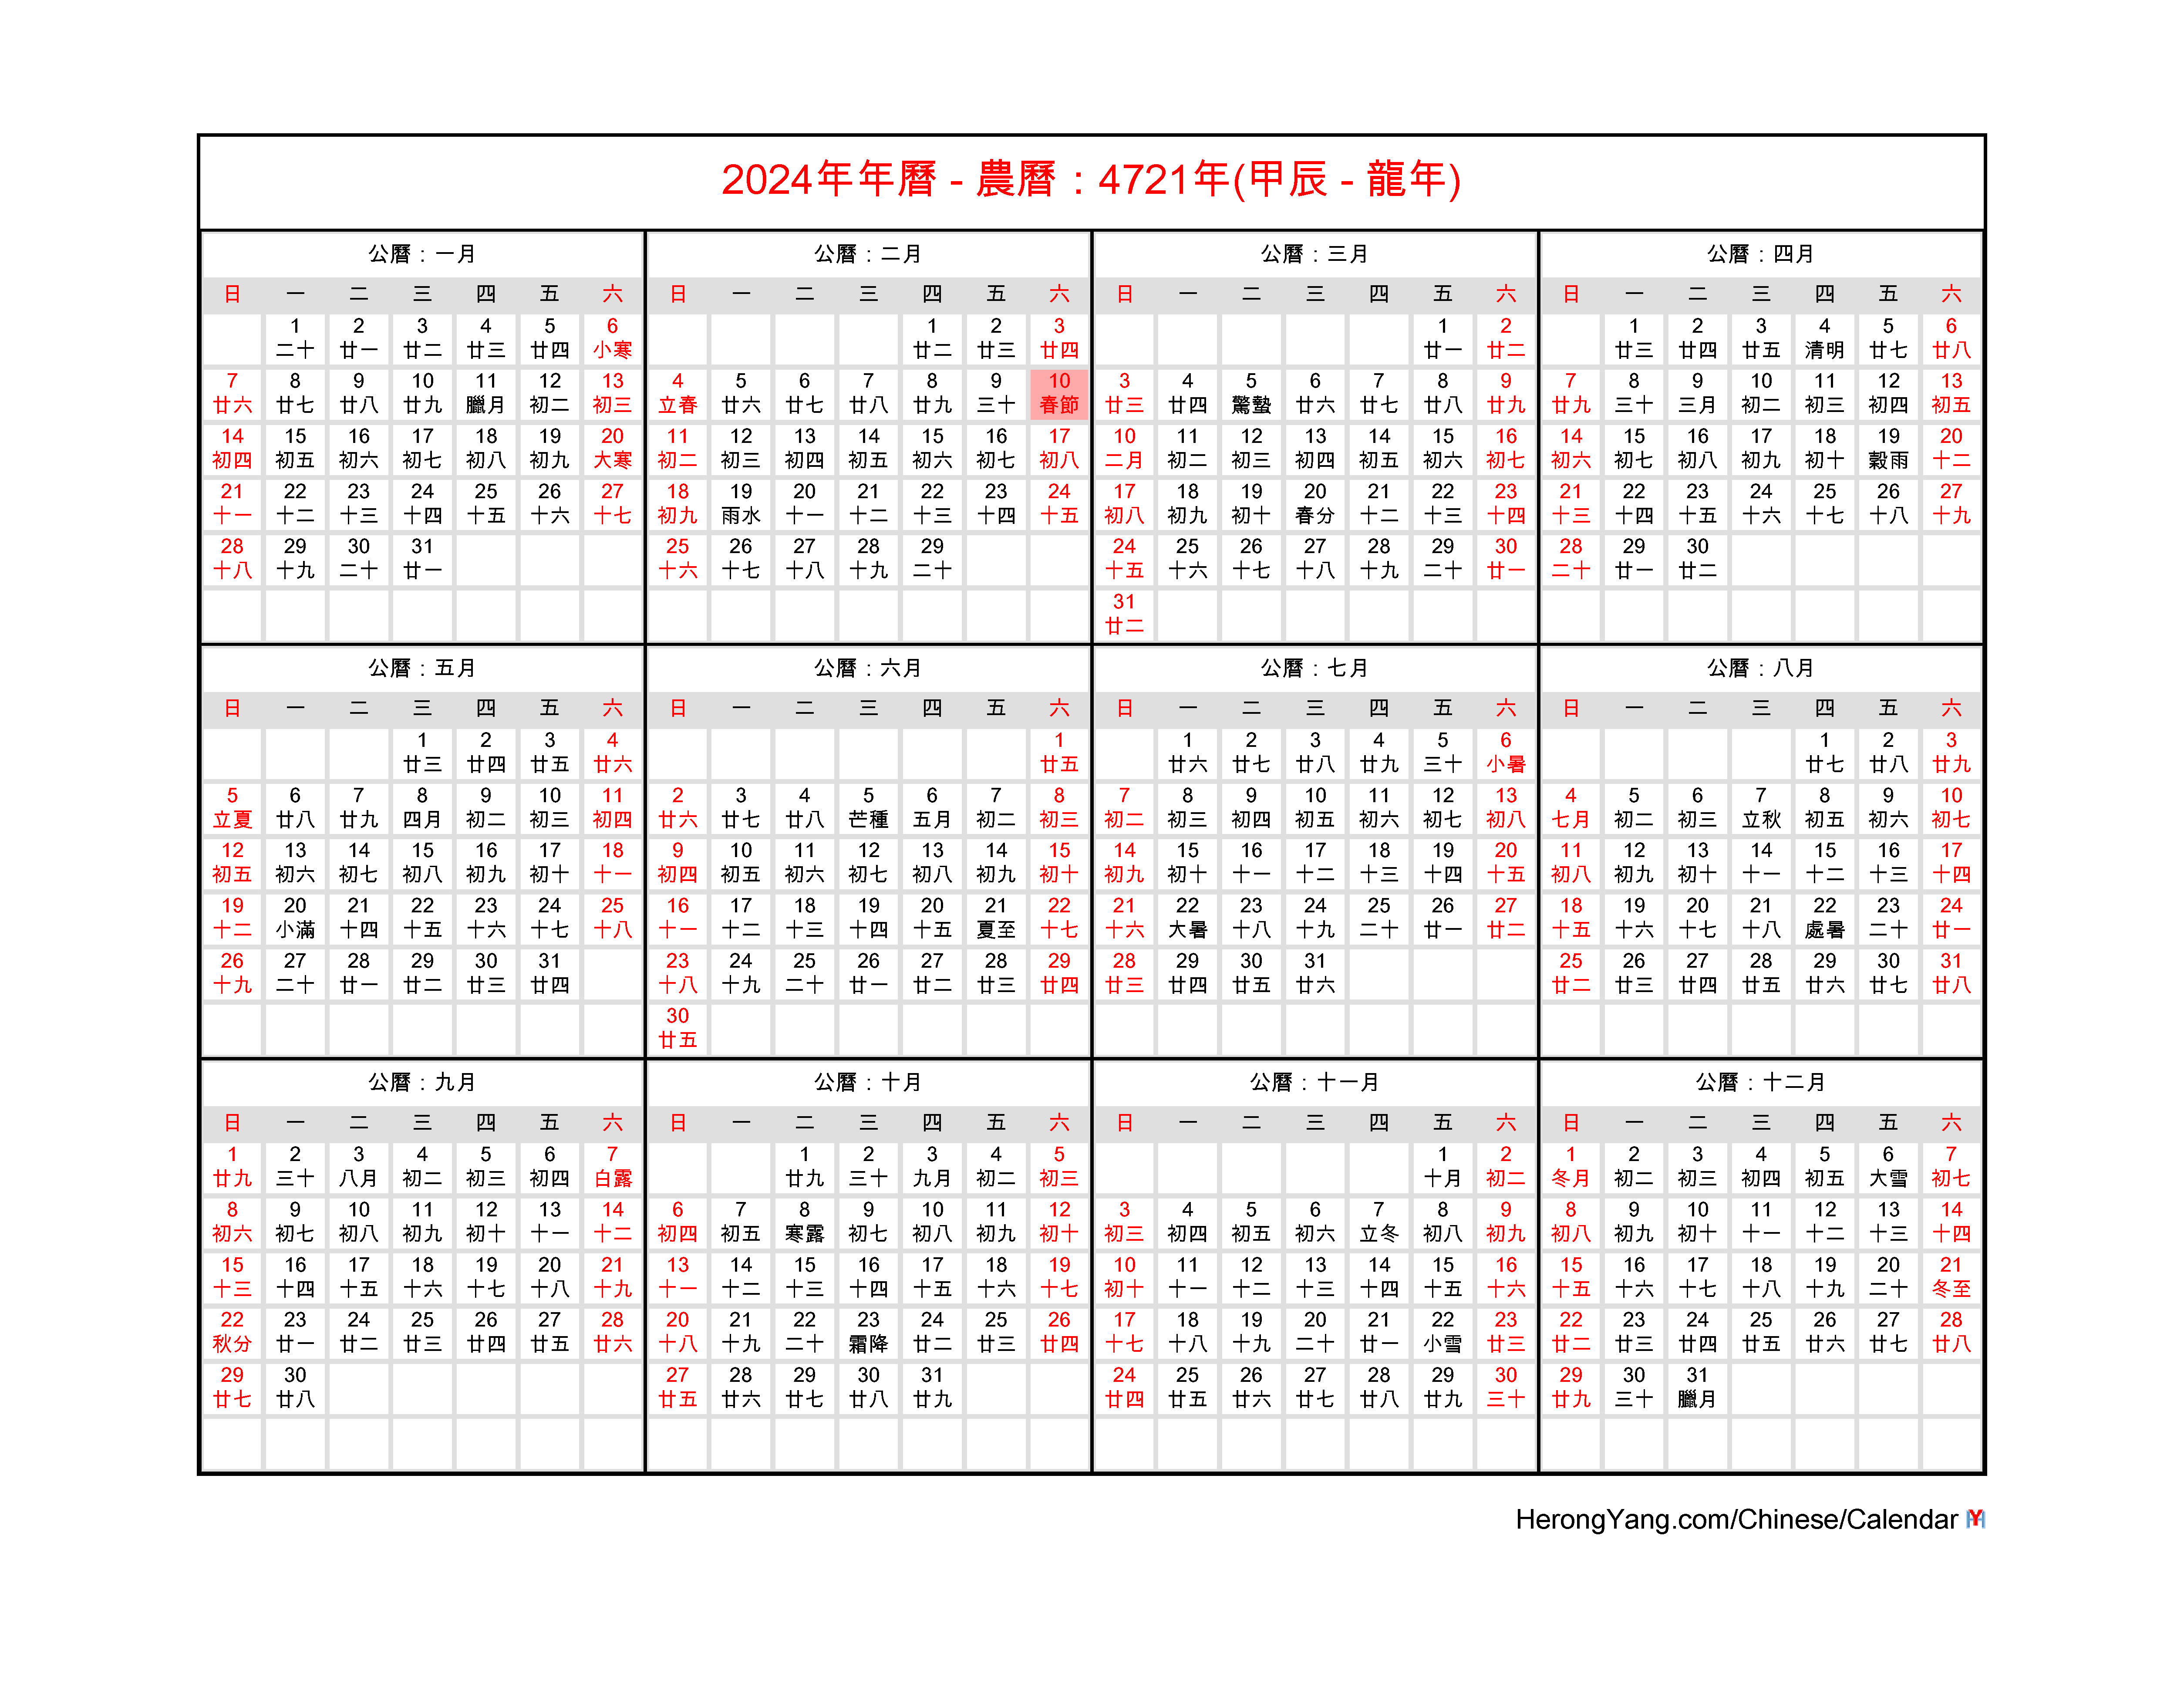 Hong Kong 2024 Holidays Devin Feodora